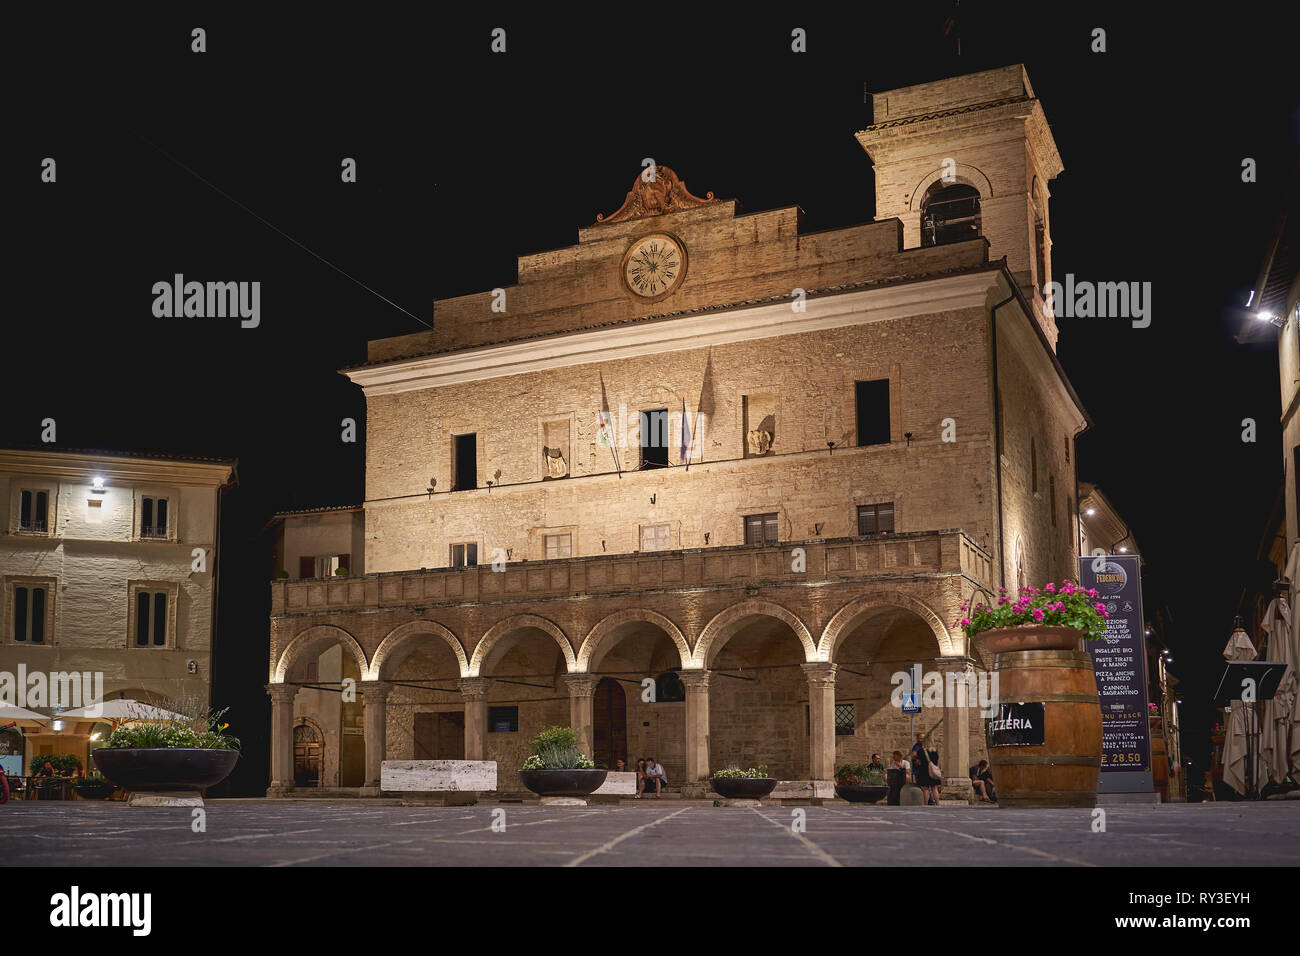 Foligno, Italie - juillet 2018. Une vue de la nuit de la 13e siècle Palazzo Comunale (Mairie) sur la place principale de la ville médiévale de Montefalco. Banque D'Images